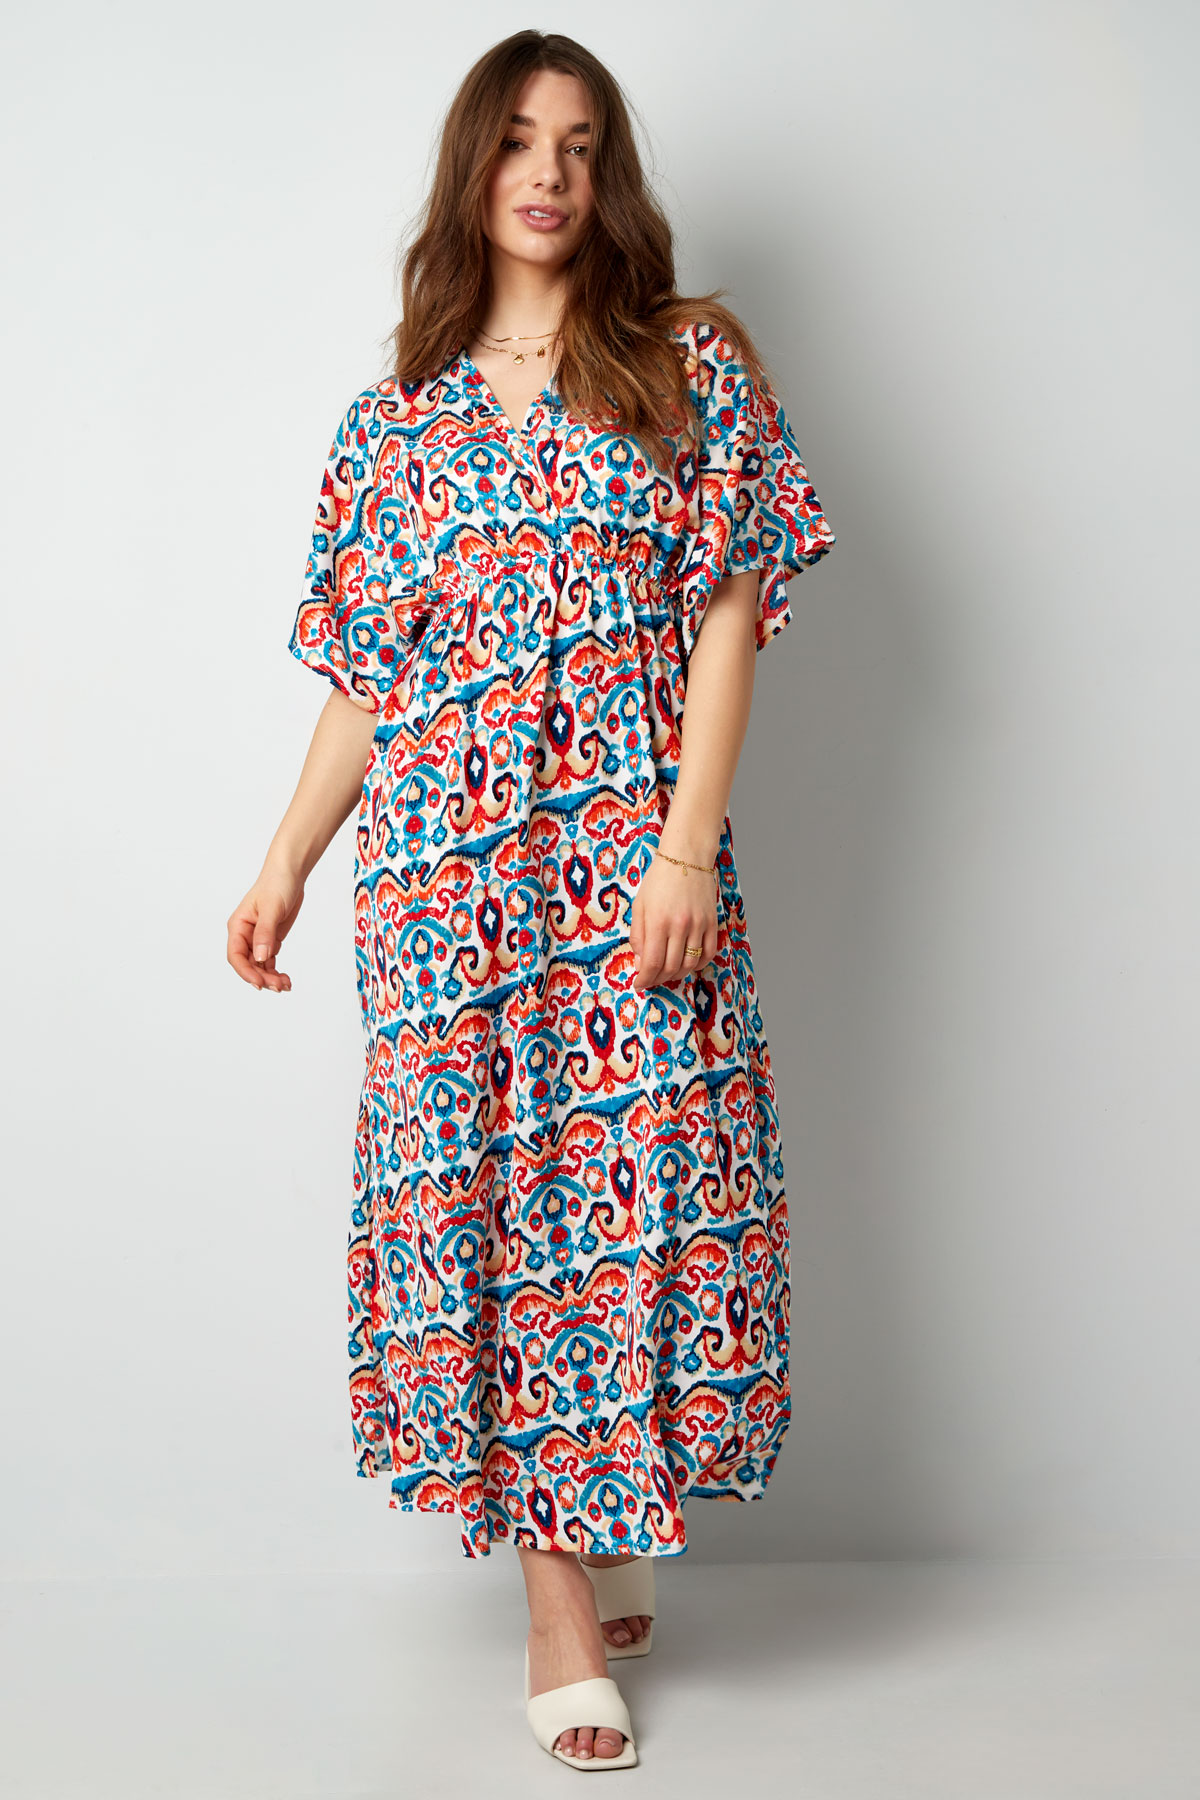 Langes Kleid mit Print - Rot/Blau - S h5 Bild3